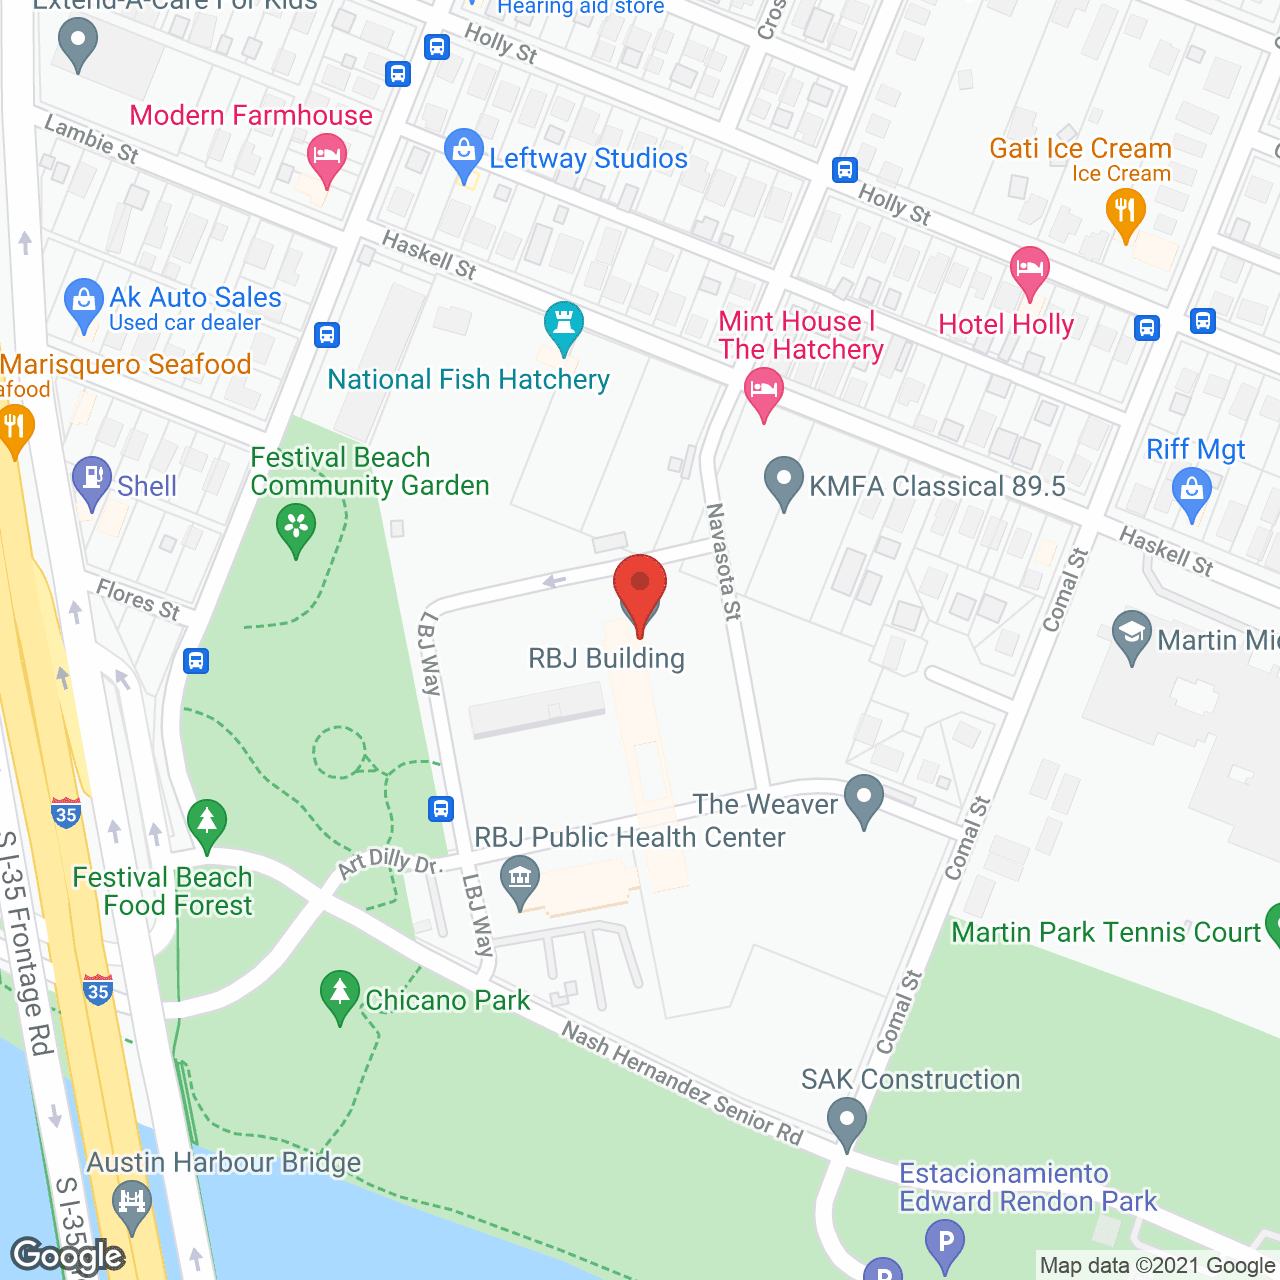 RBJ Residential Tower in google map